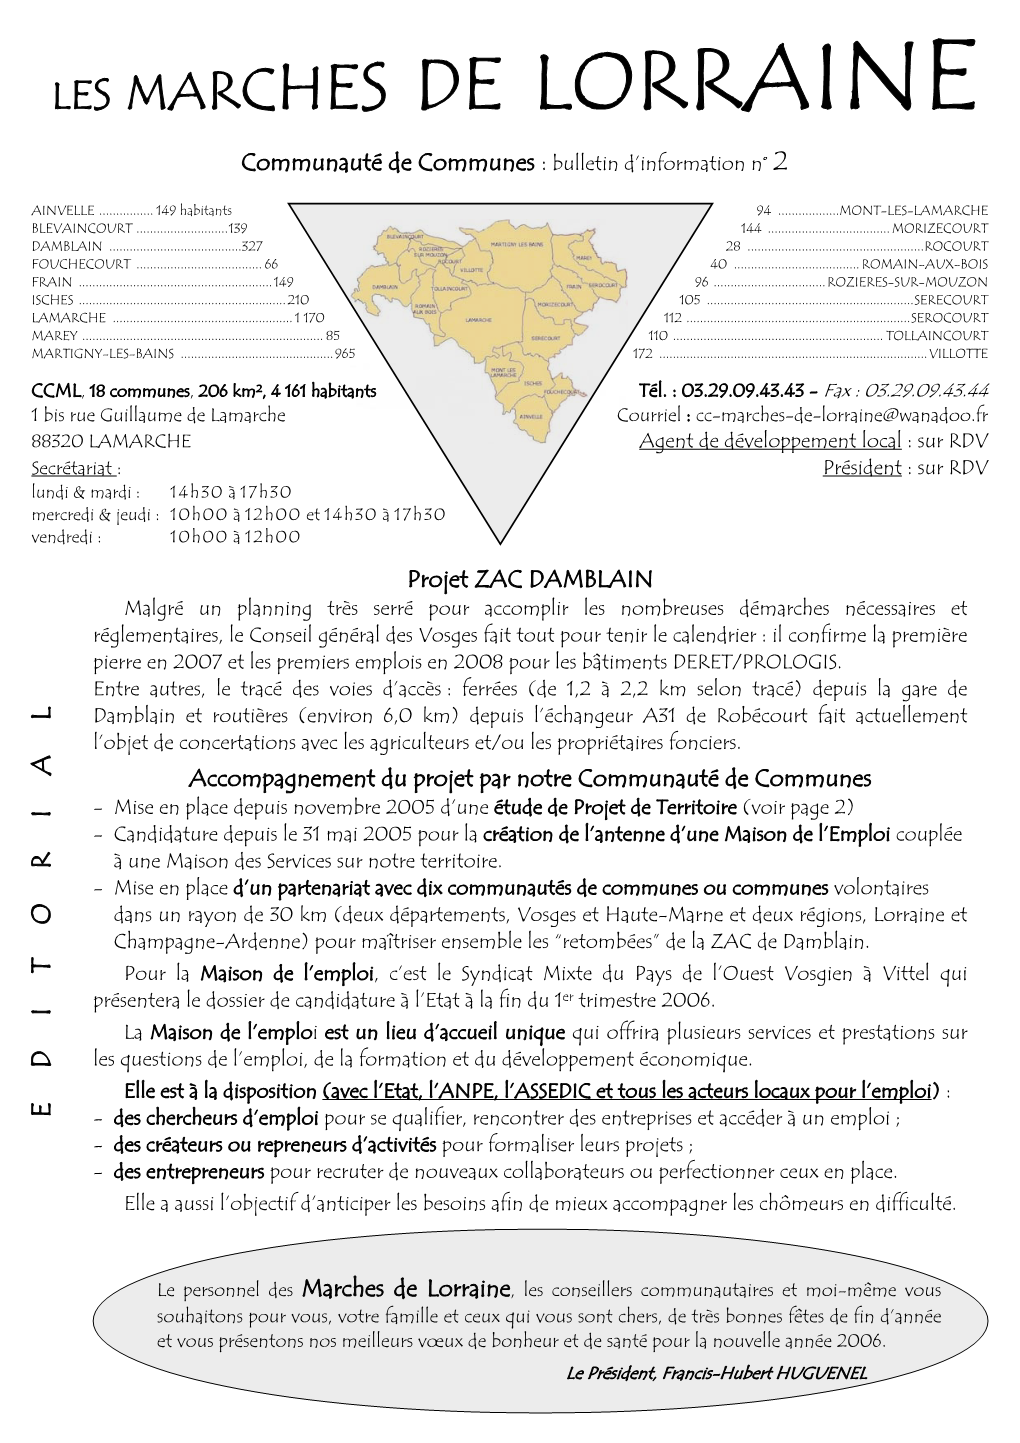 LES MARCHES DE LORRAINE Communauté De Communes : Bulletin D’Information N° 2